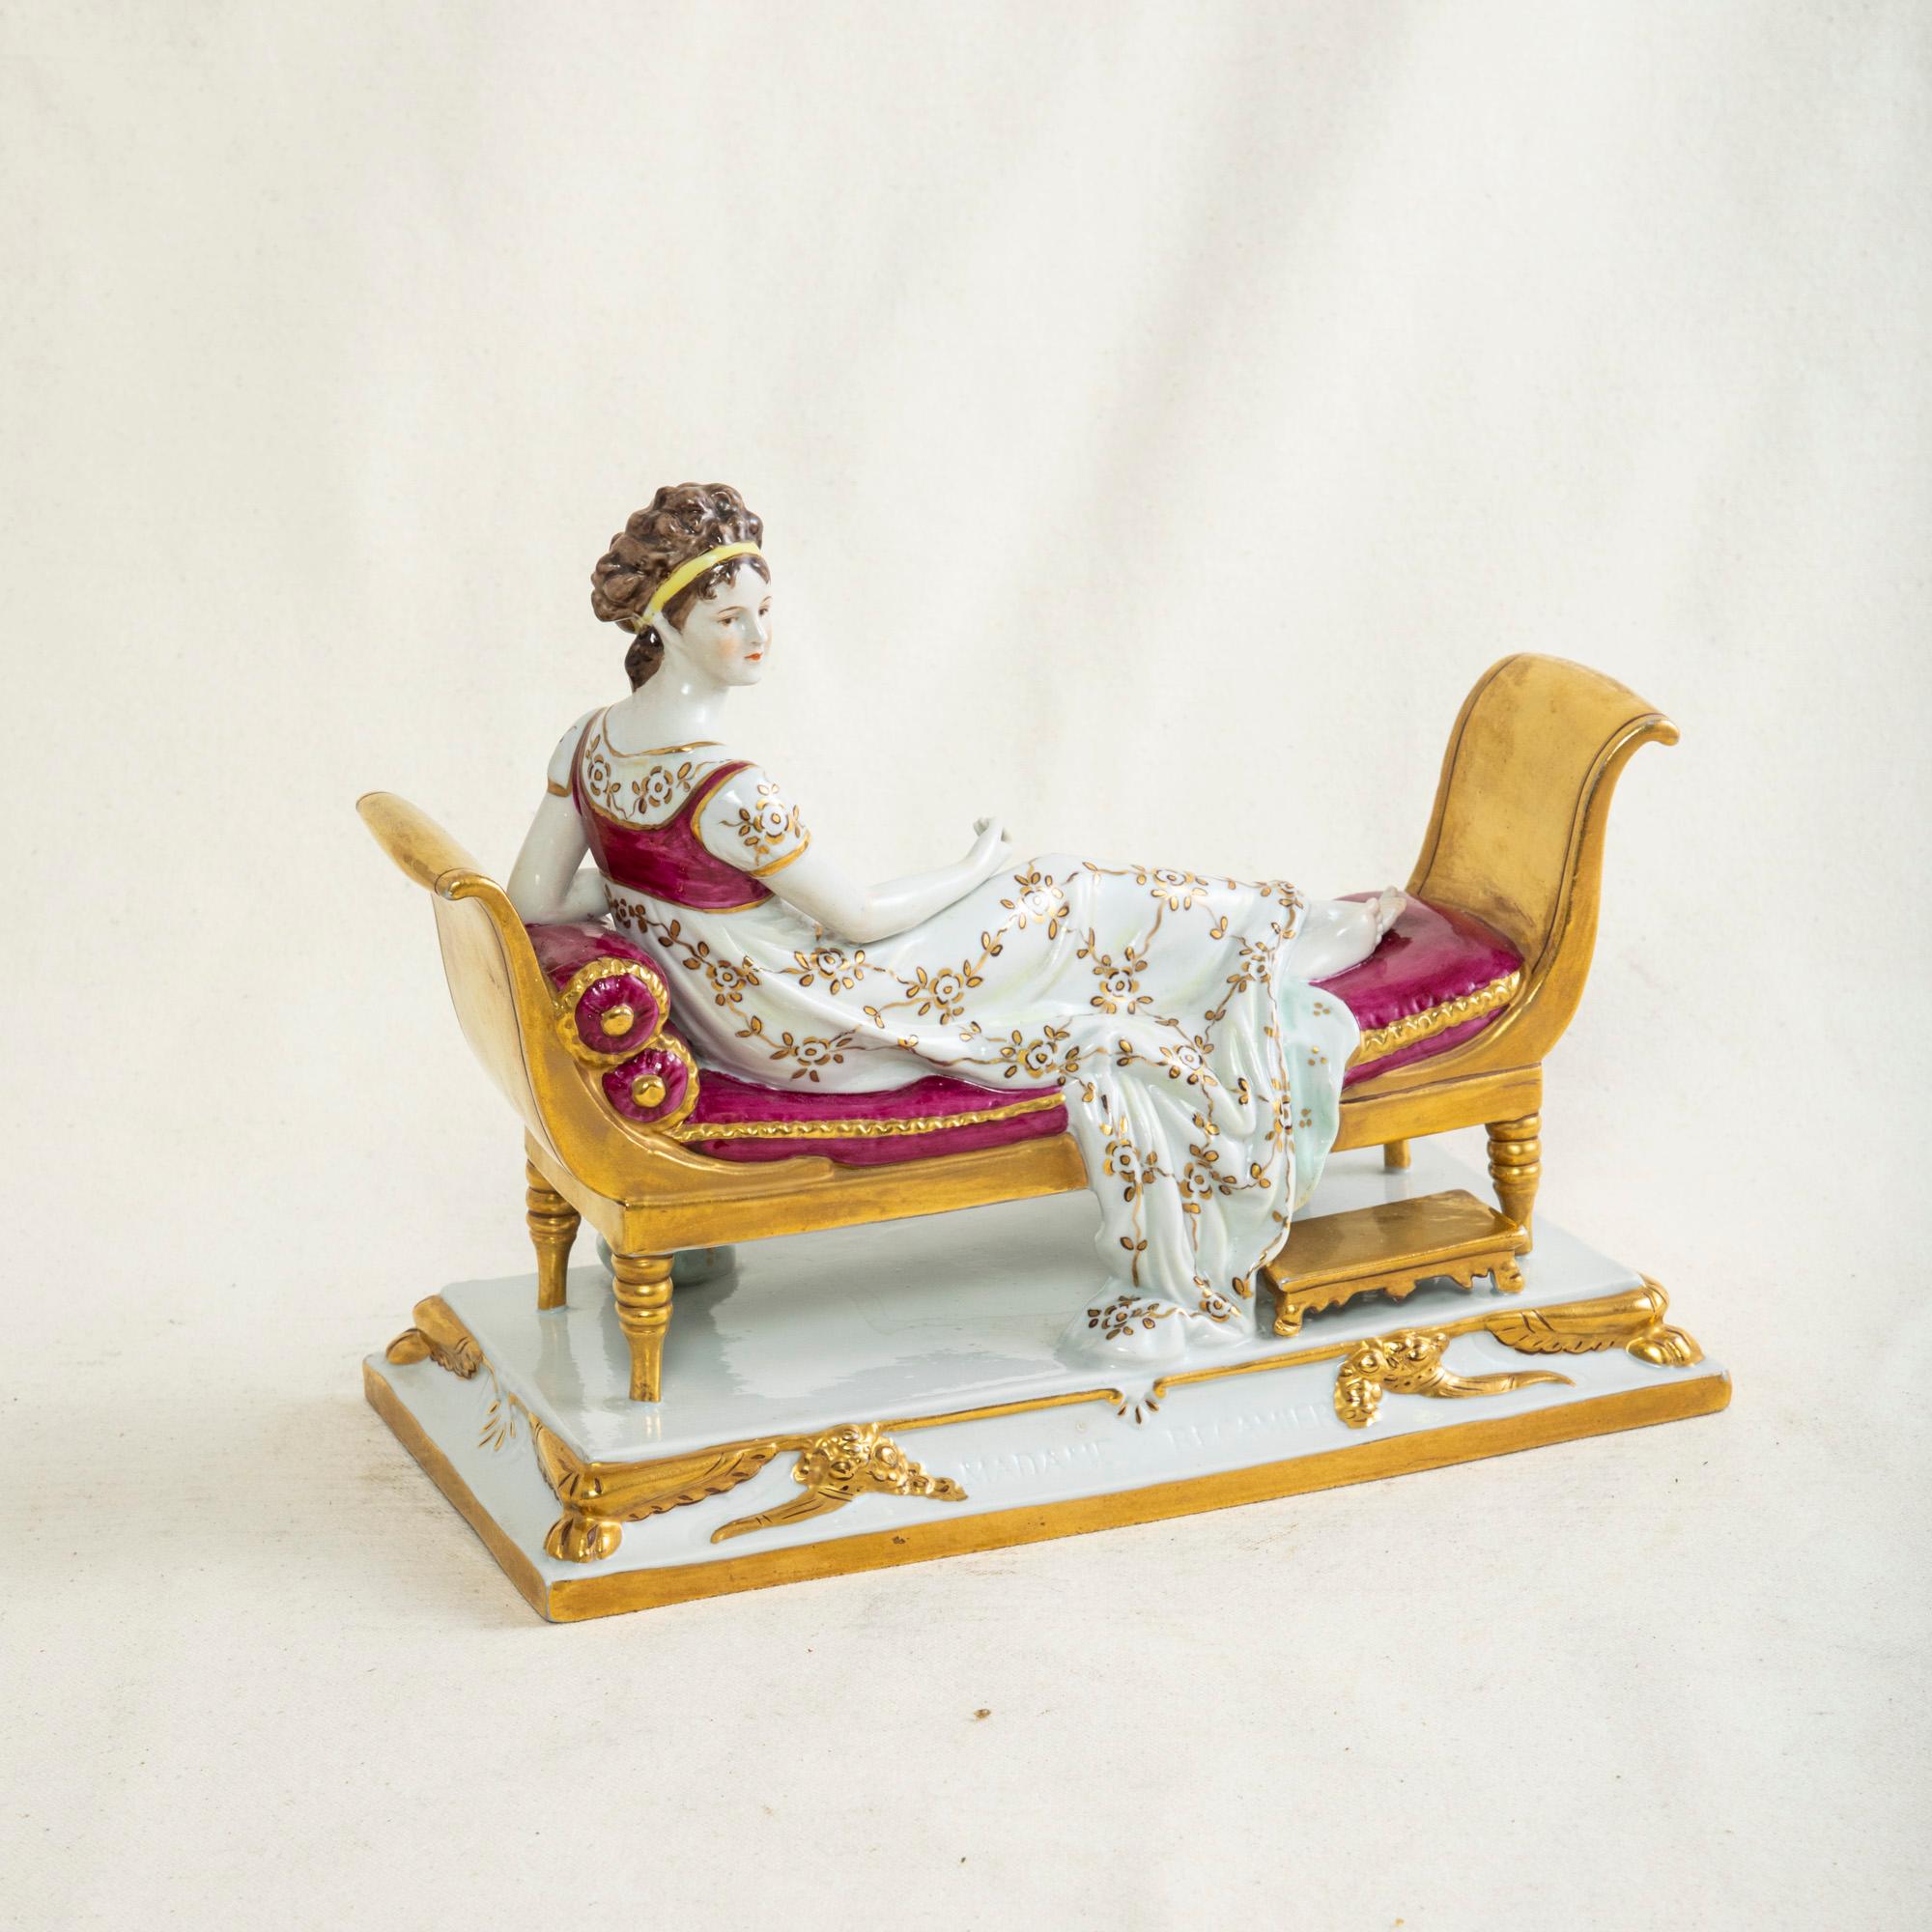 Cette figurine en porcelaine française de la fin du XIXe siècle représente Madame Récamier au repos sur un lit de repos doré. Juliette Récamier (1777-1849) était une mondaine célèbre au début du XIXe siècle, connue pour sa beauté ainsi que pour ses